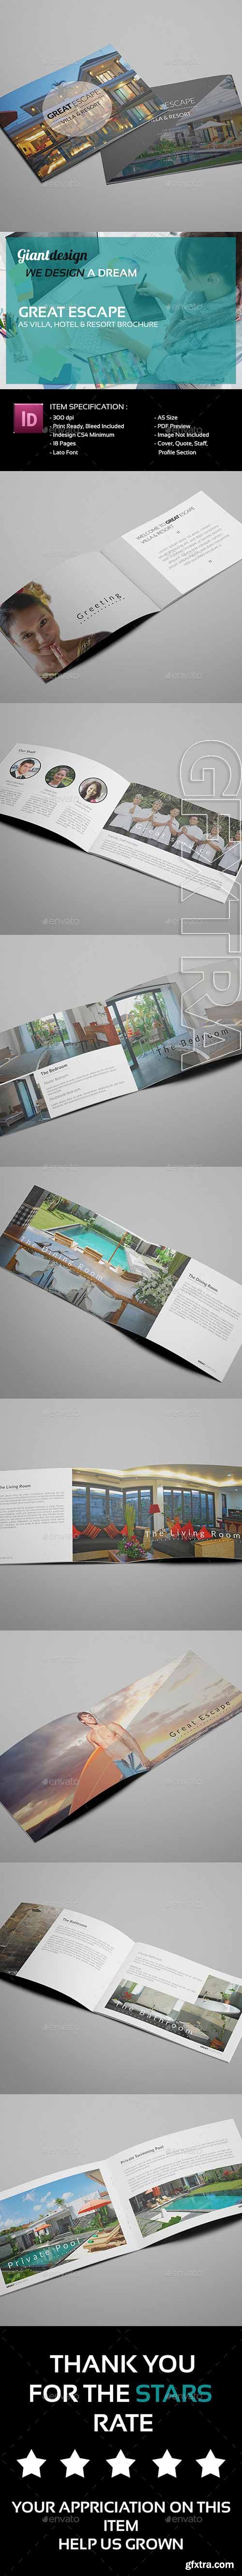 GraphicRiver - Great Escape - A5 Villa Resort Brochure 9854499